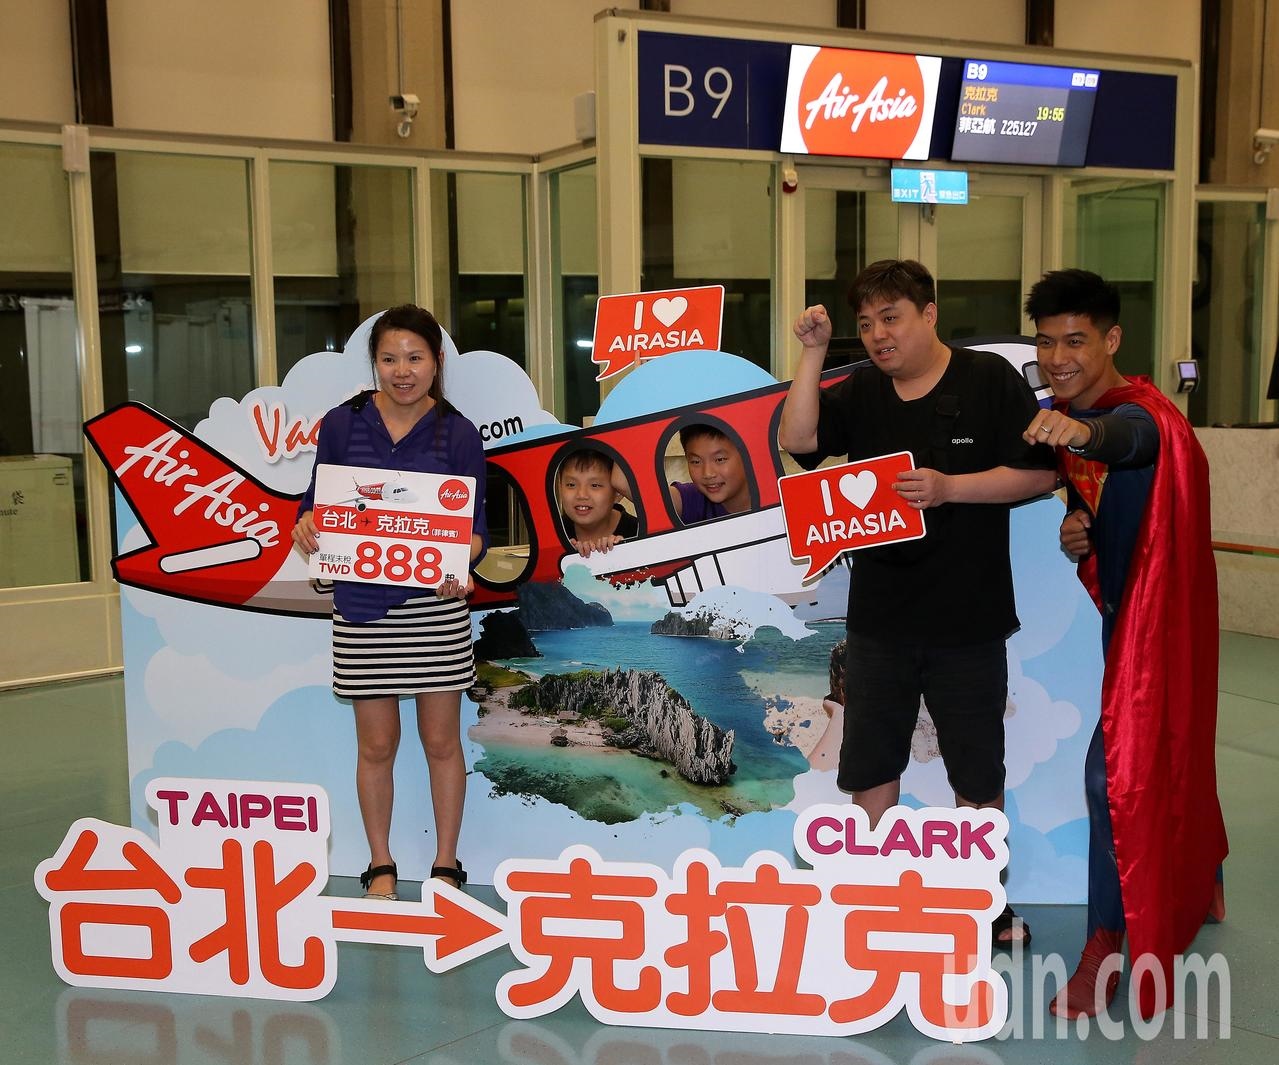 Air Asia於12日開闢桃園往返菲律賓克拉克航線，在候機室設置看板，員工扮演與克拉克同名的偶像人物「超人」與旅客合照。記者陳嘉寧／攝影